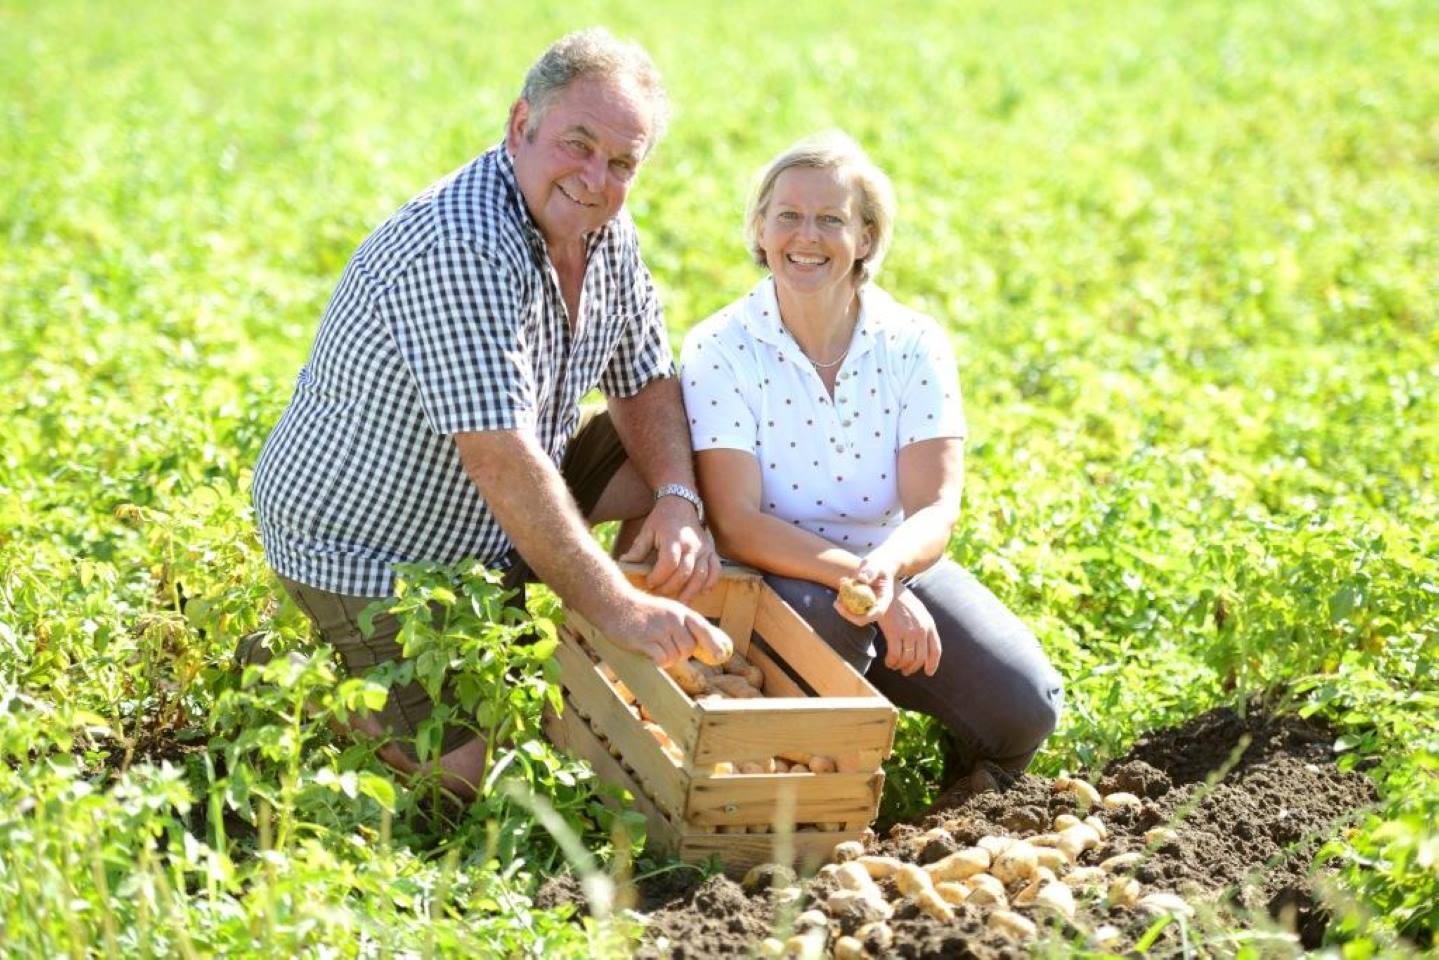 Edwin Reiner Kniet Mit Seiner Frau Inmitten Des Kartoffelfeldes, Beide Lächeln In Die Kamera